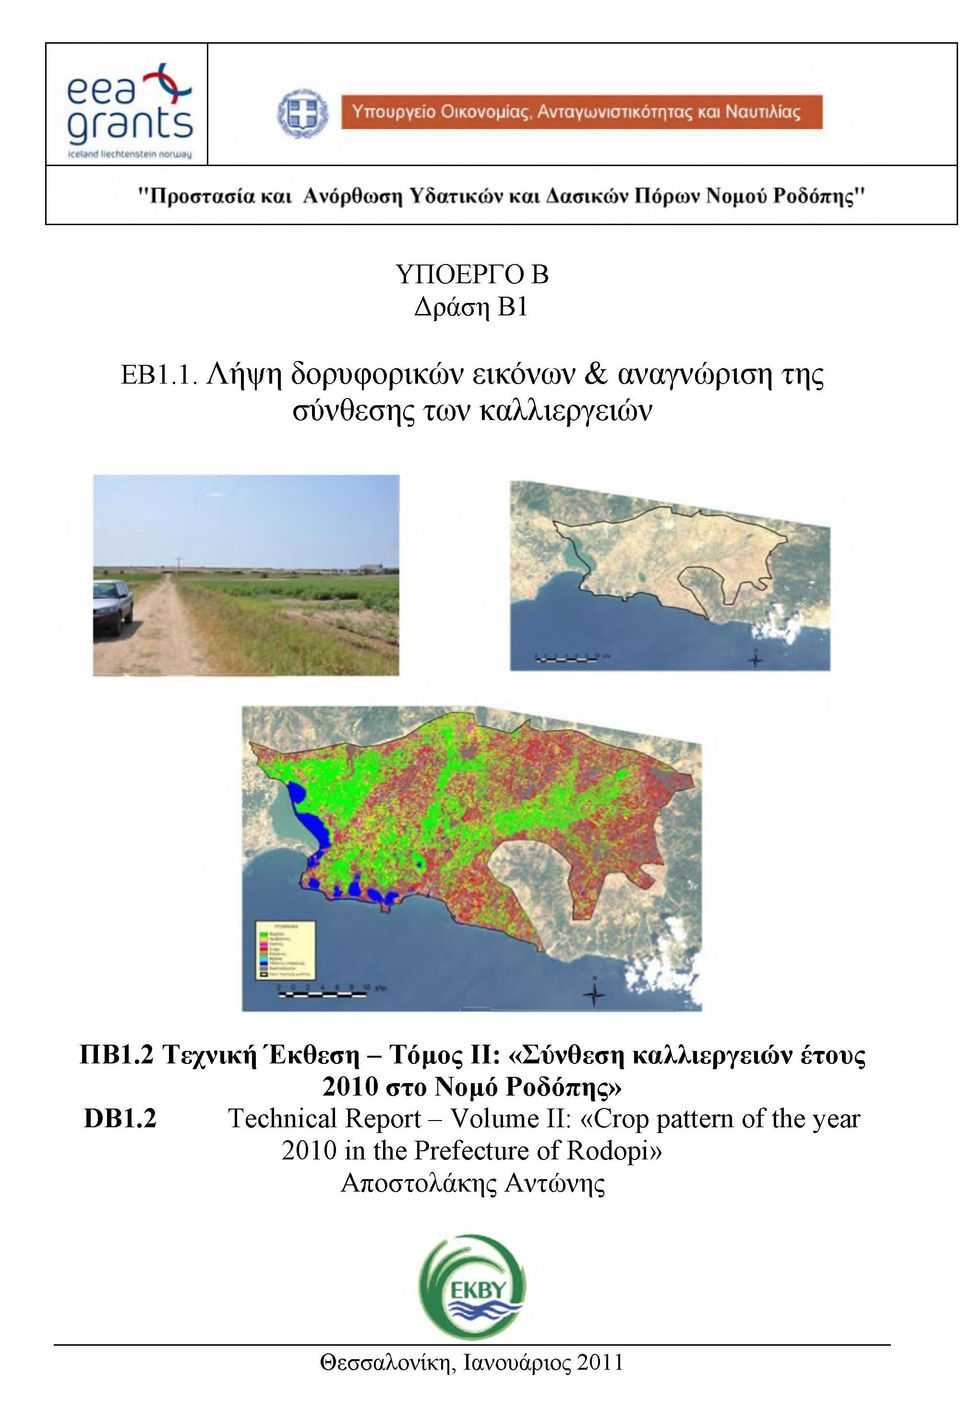 2 Τεχνική Έκθεση - Τόμος ΙΙ: «Σύνθεση καλλιεργειών έτους 2010 στο Νομό Ροδόπης»